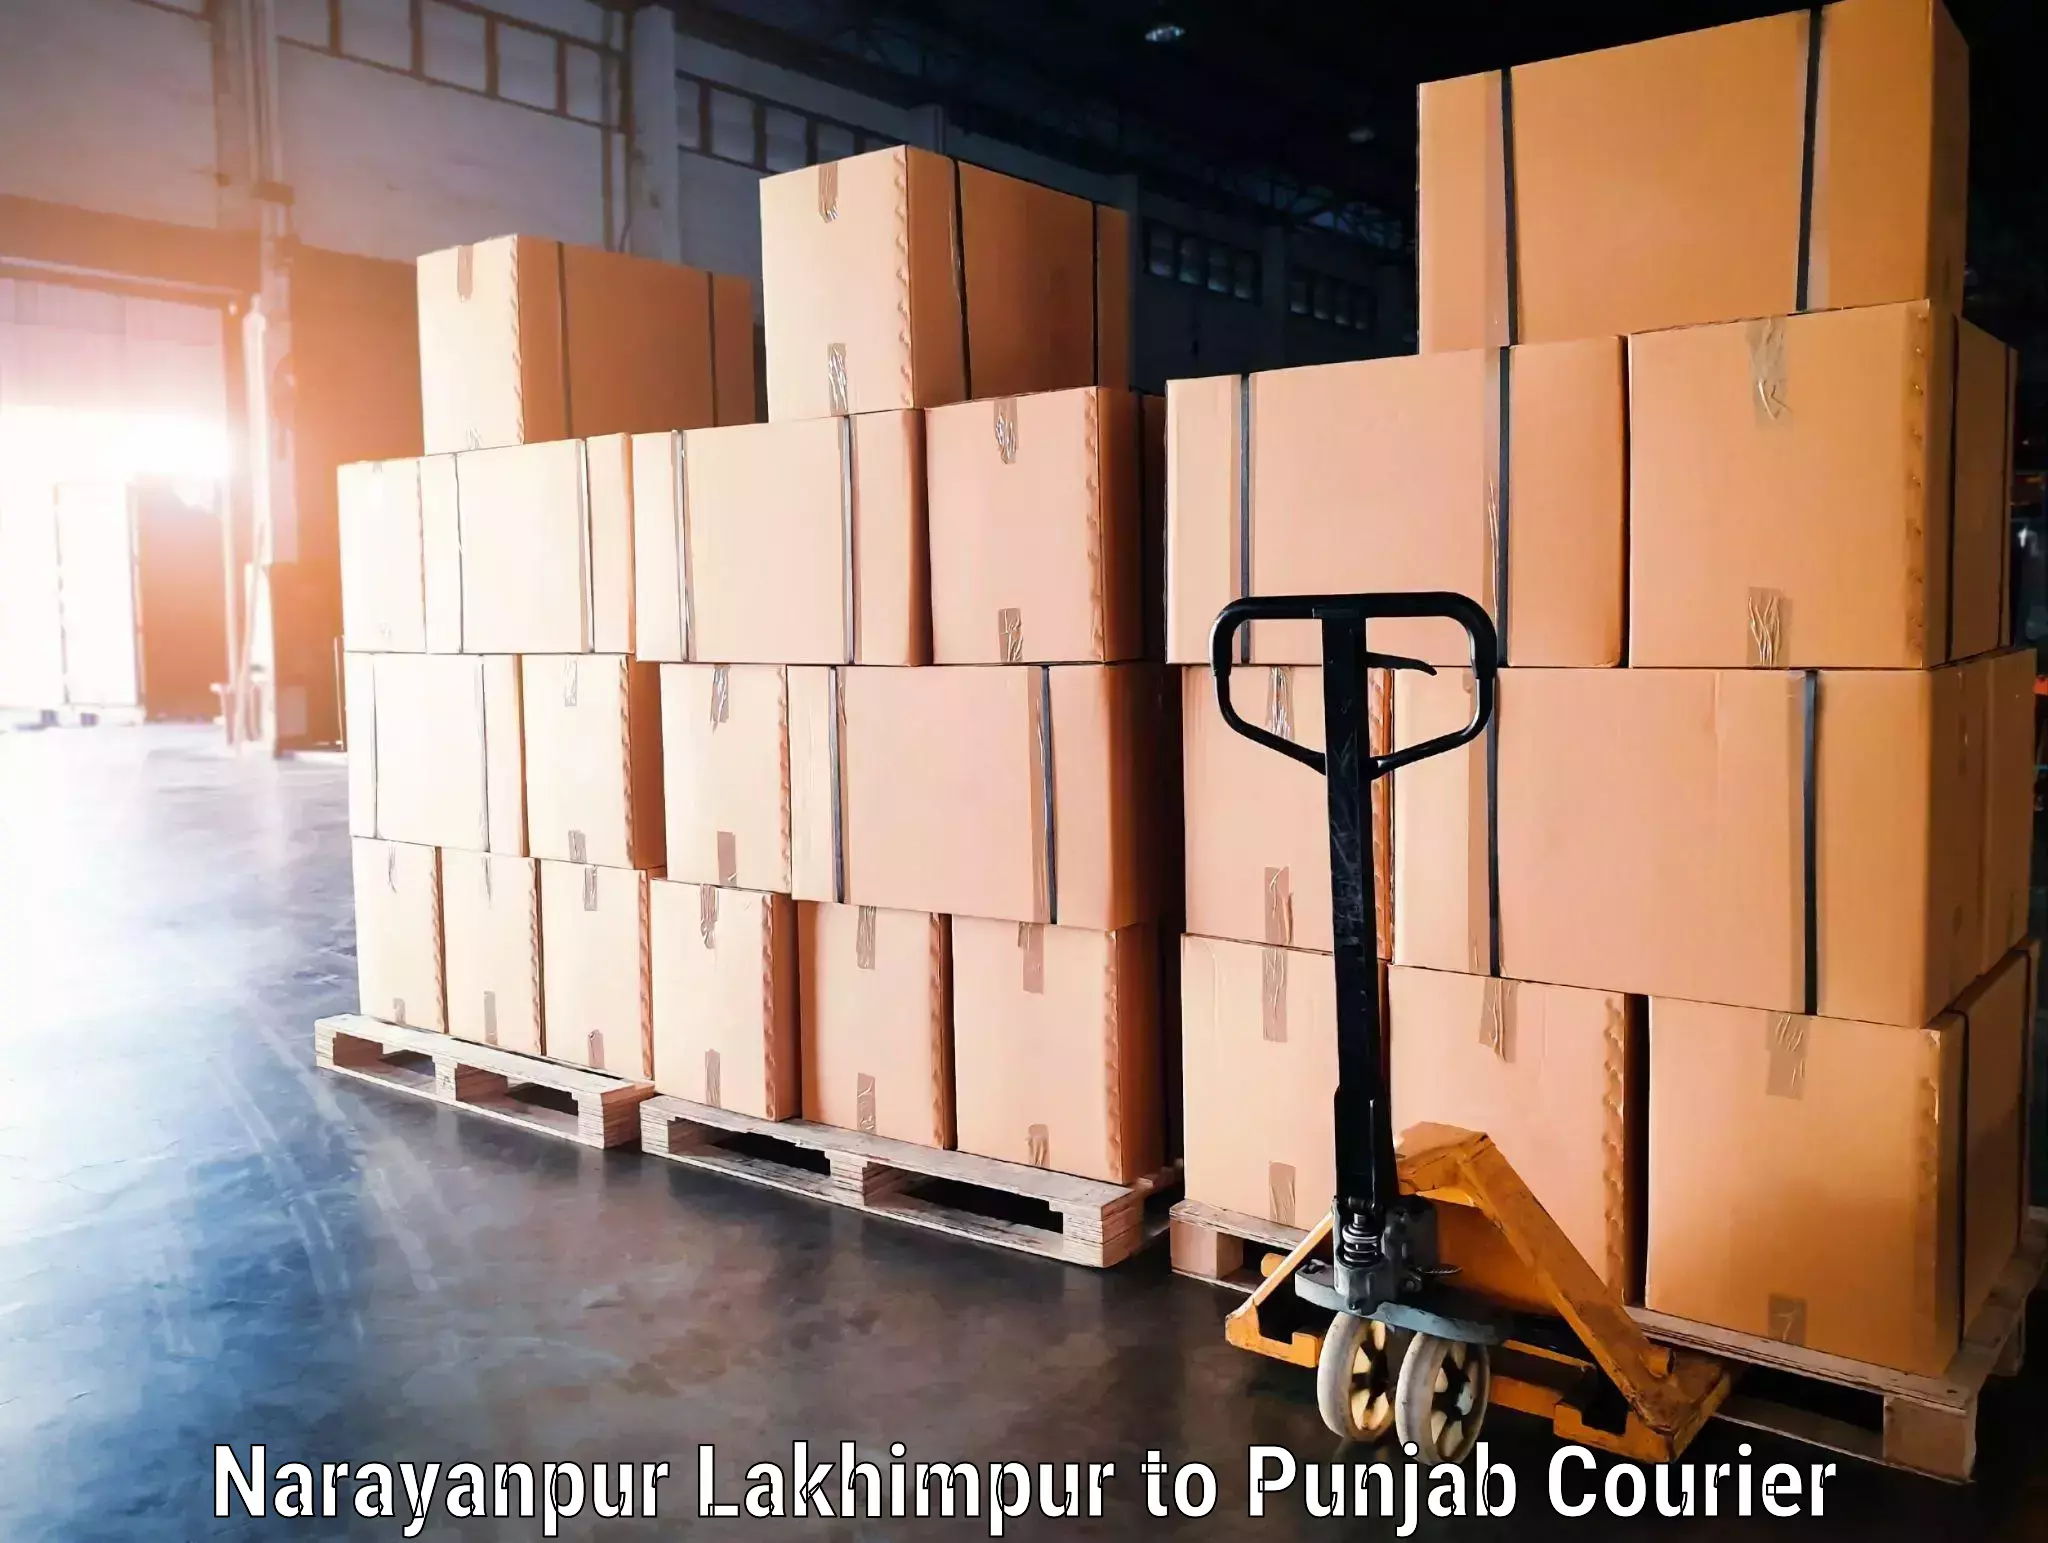 Baggage transport technology Narayanpur Lakhimpur to Phillaur